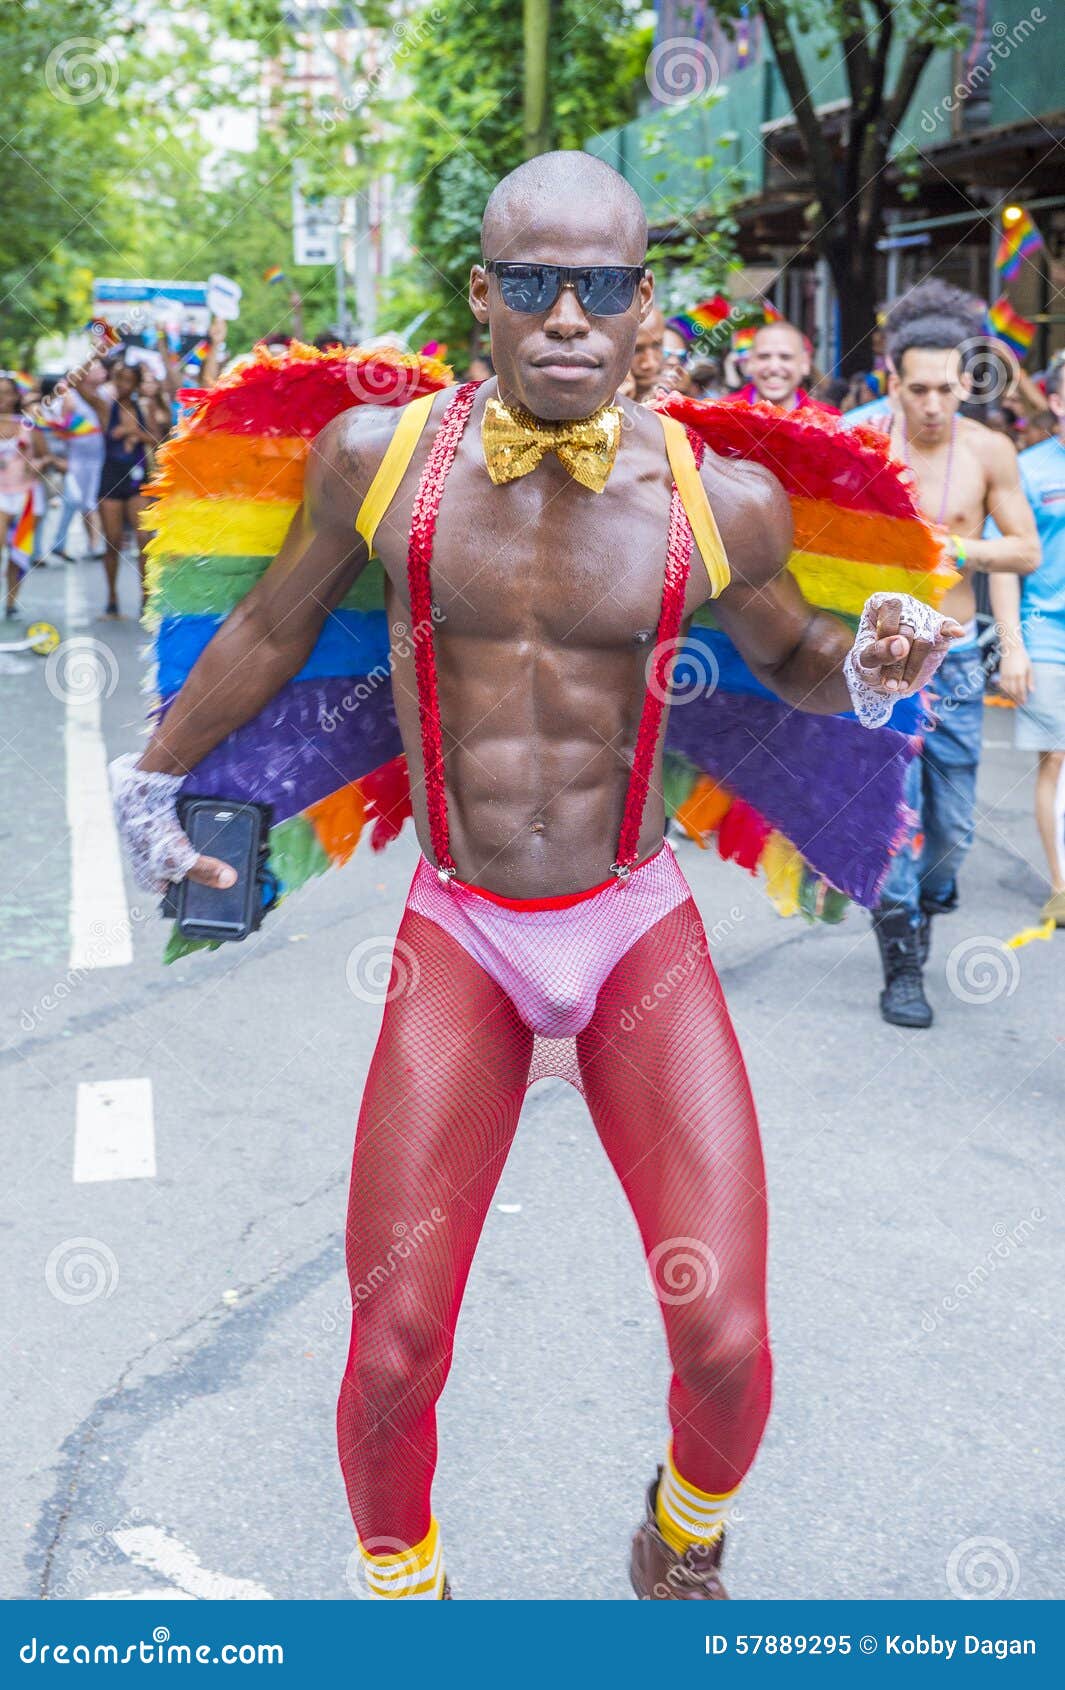 самые большие геи парад фото 98